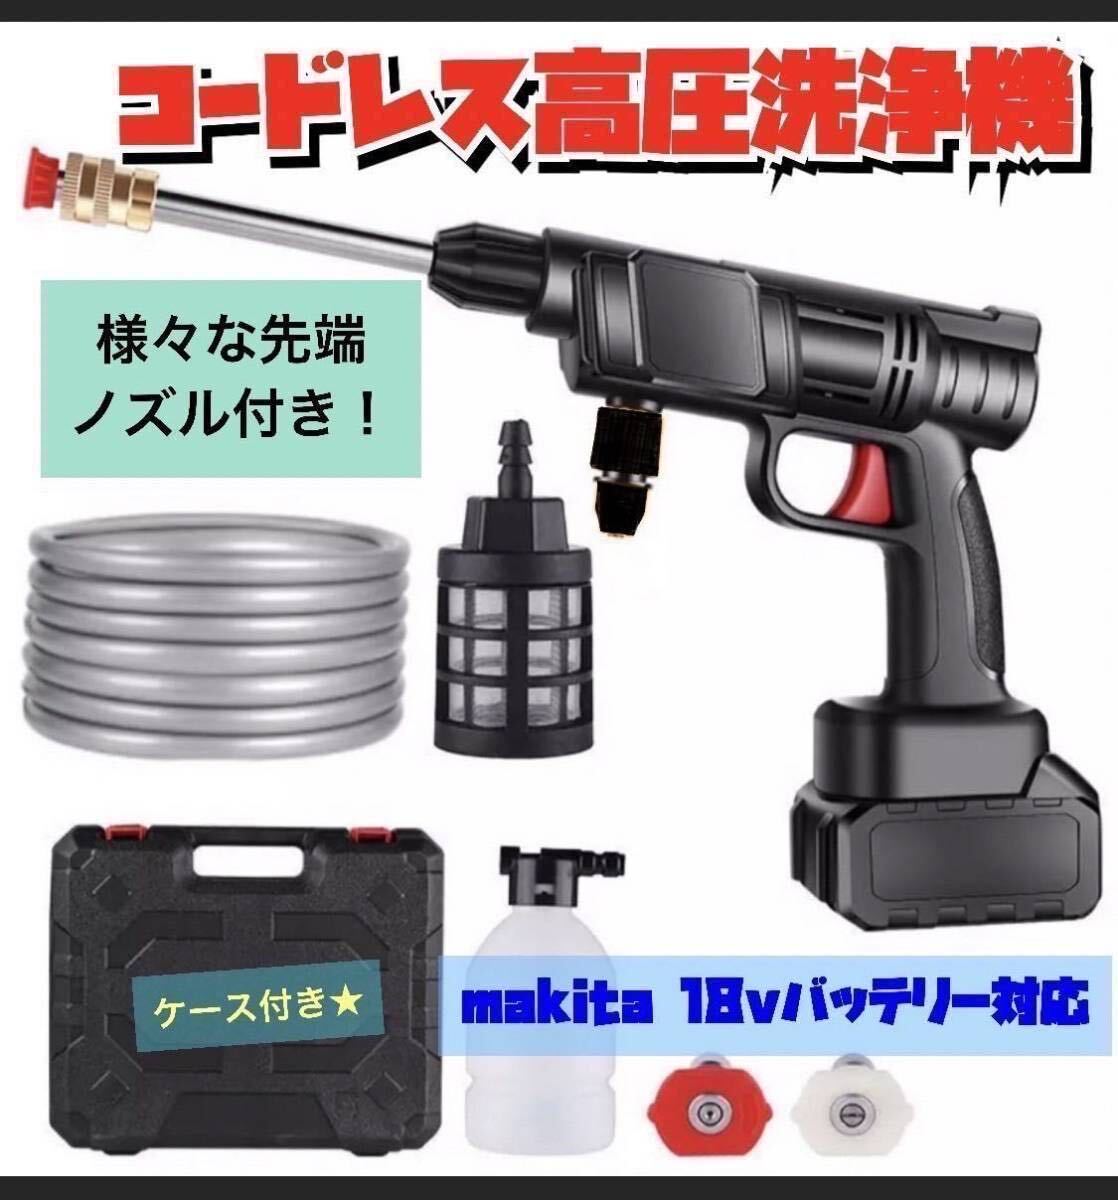 新製品 高圧洗浄機 コードレス 充電式 マキタ makita 洗車 掃除_画像1